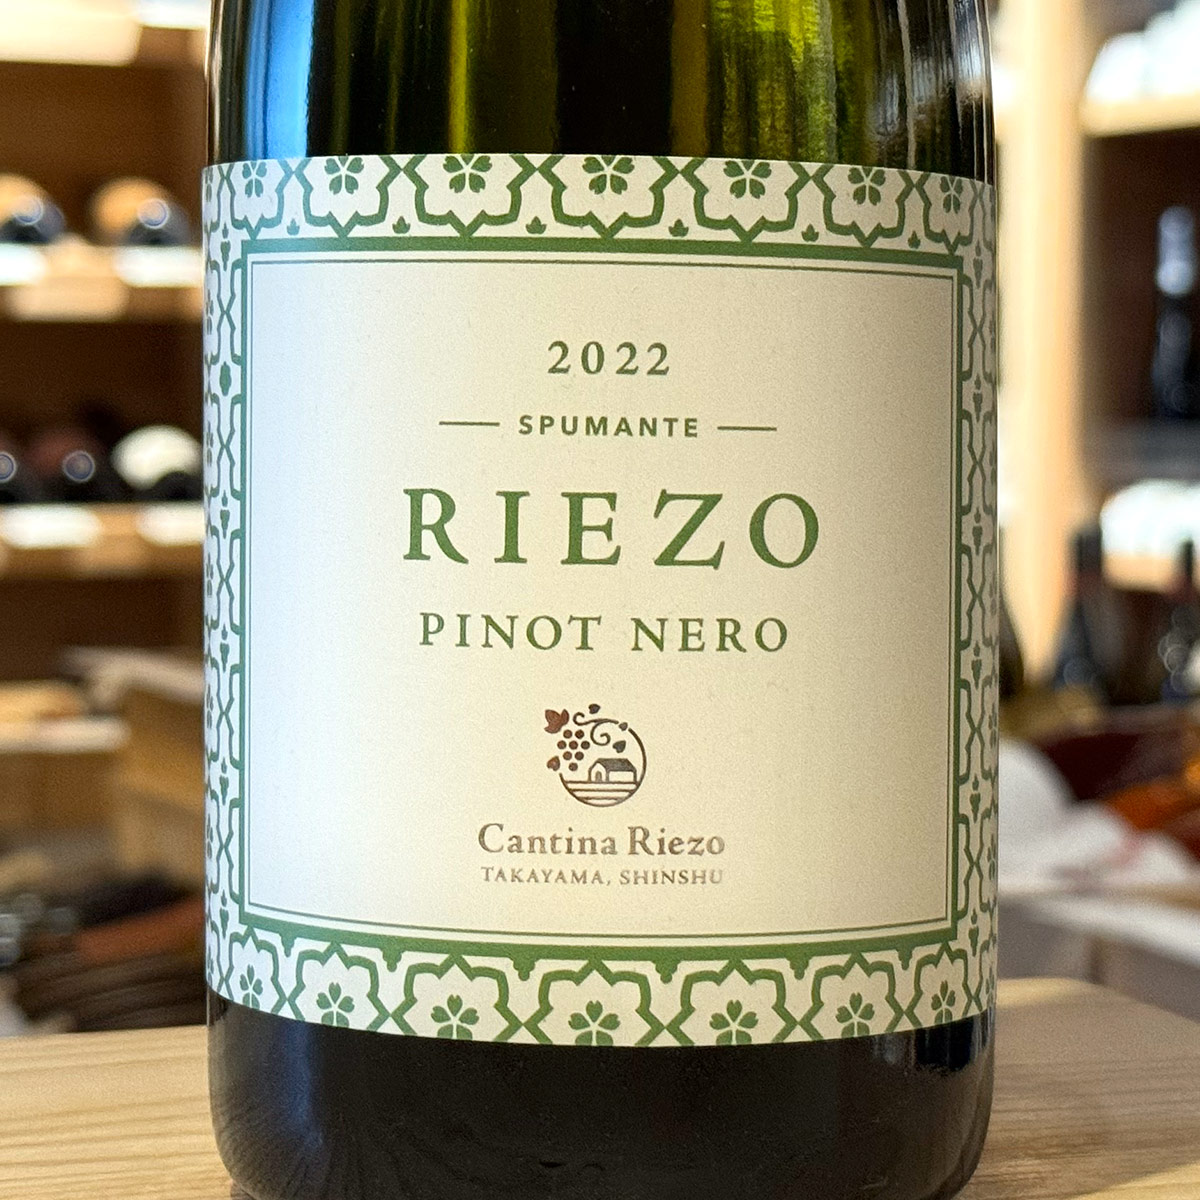 Riezo Spumante Pinot Nero 2022